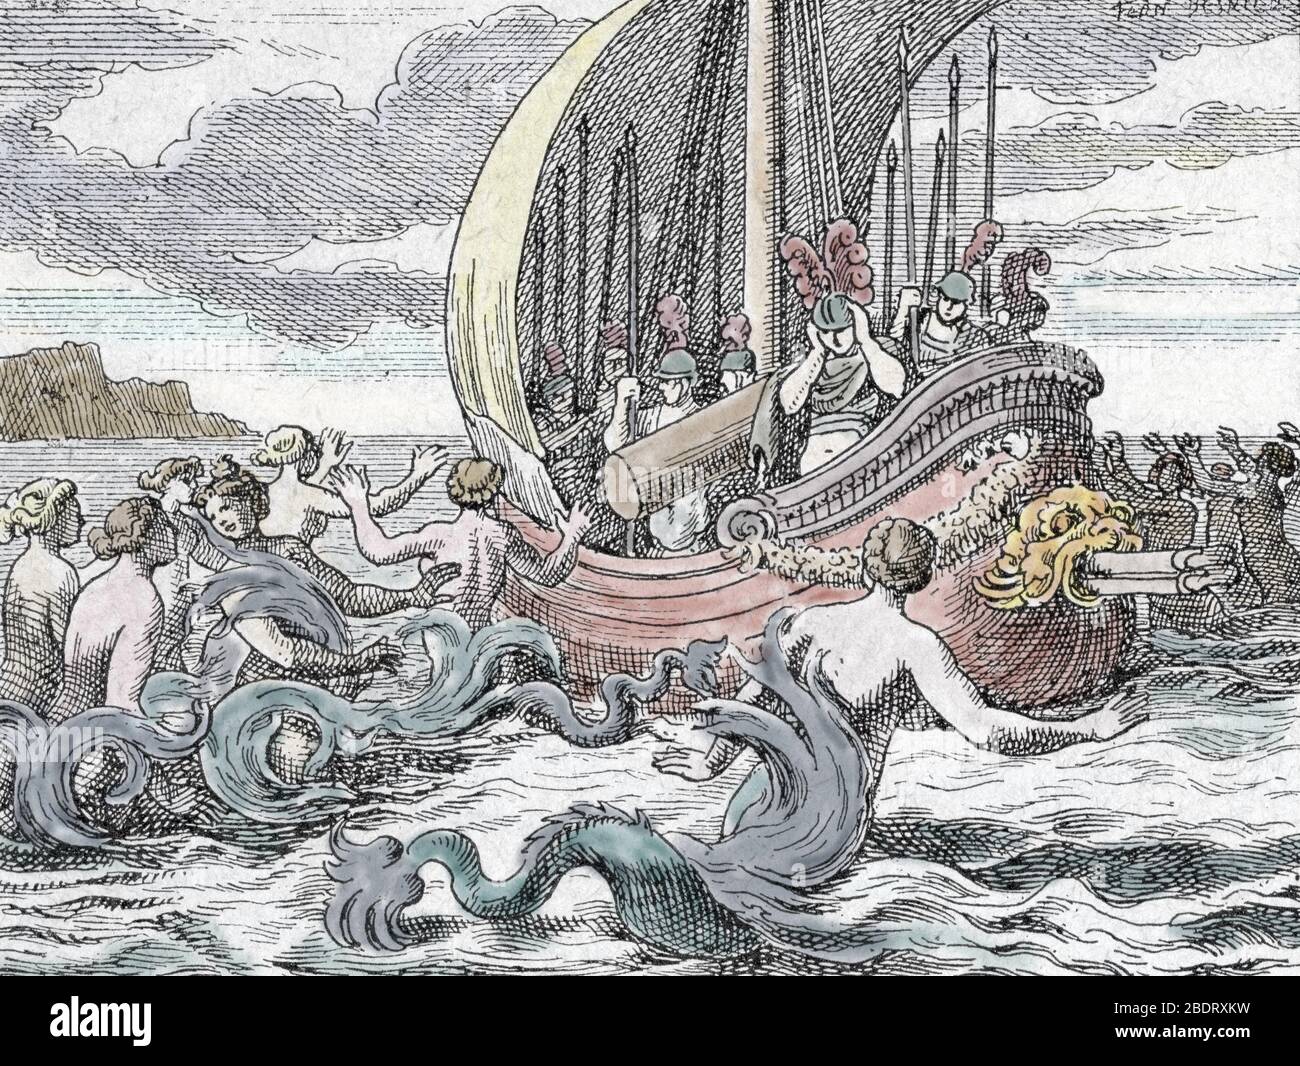 Odyssee d'Homere : 'les sirenes cherchant un pieger le navire d'Ulysse par leur chant' (Odyssée par Homer : Odysseus et les sirènes qui essayent avec leur si Banque D'Images